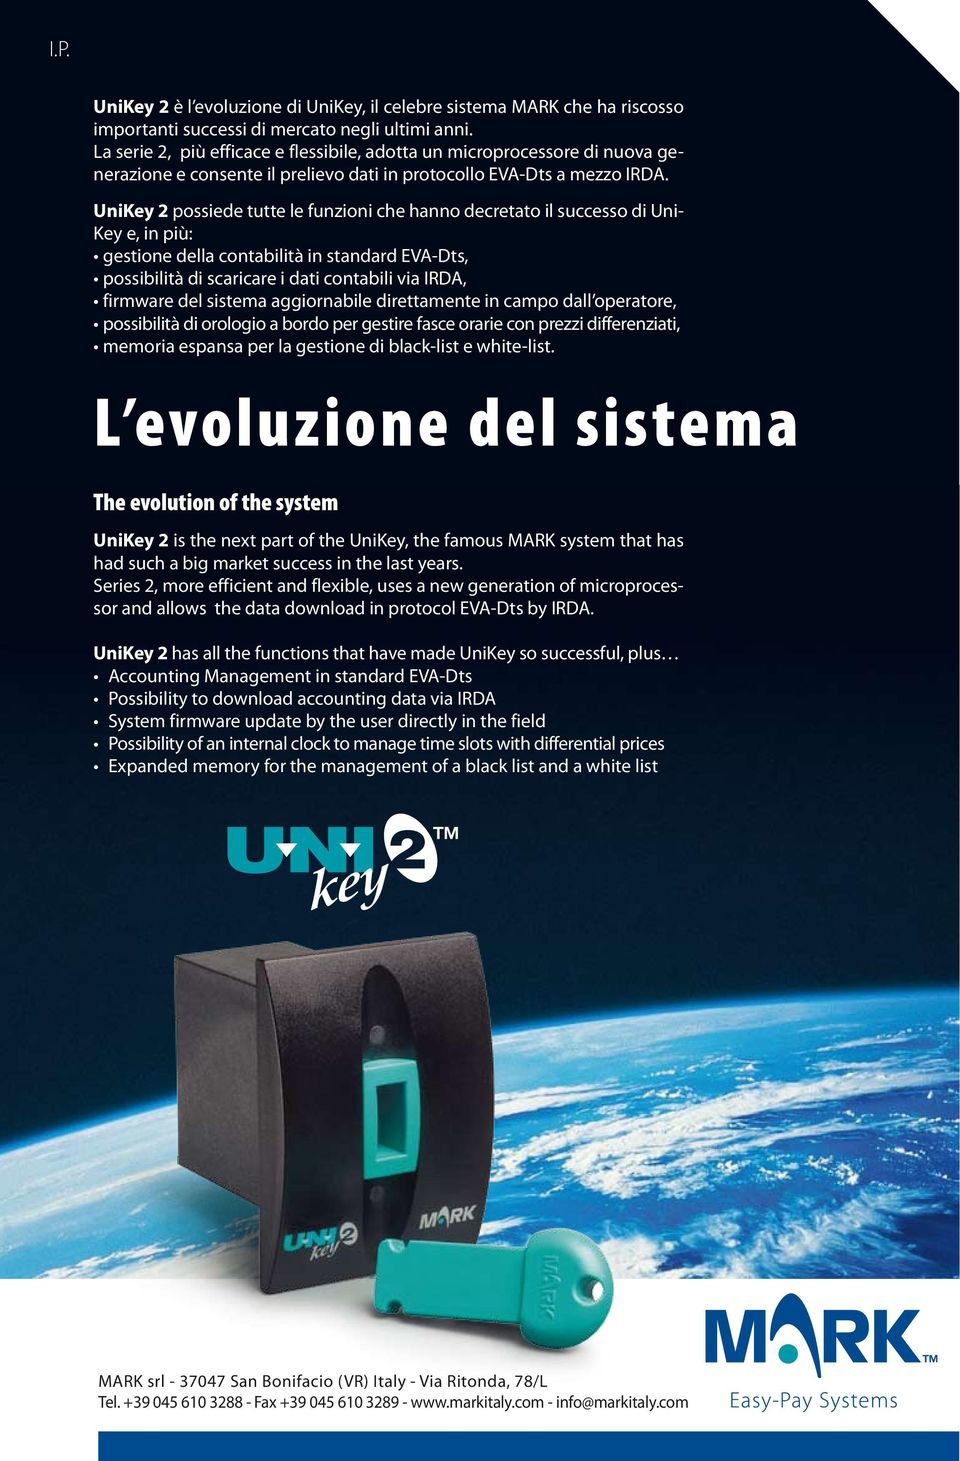 UniKey 2 possiede tutte le funzioni che hanno decretato il successo di Uni- Key e, in più: gestione della contabilità in standard EVA-Dts, possibilità di scaricare i dati contabili via IRDA, firmware